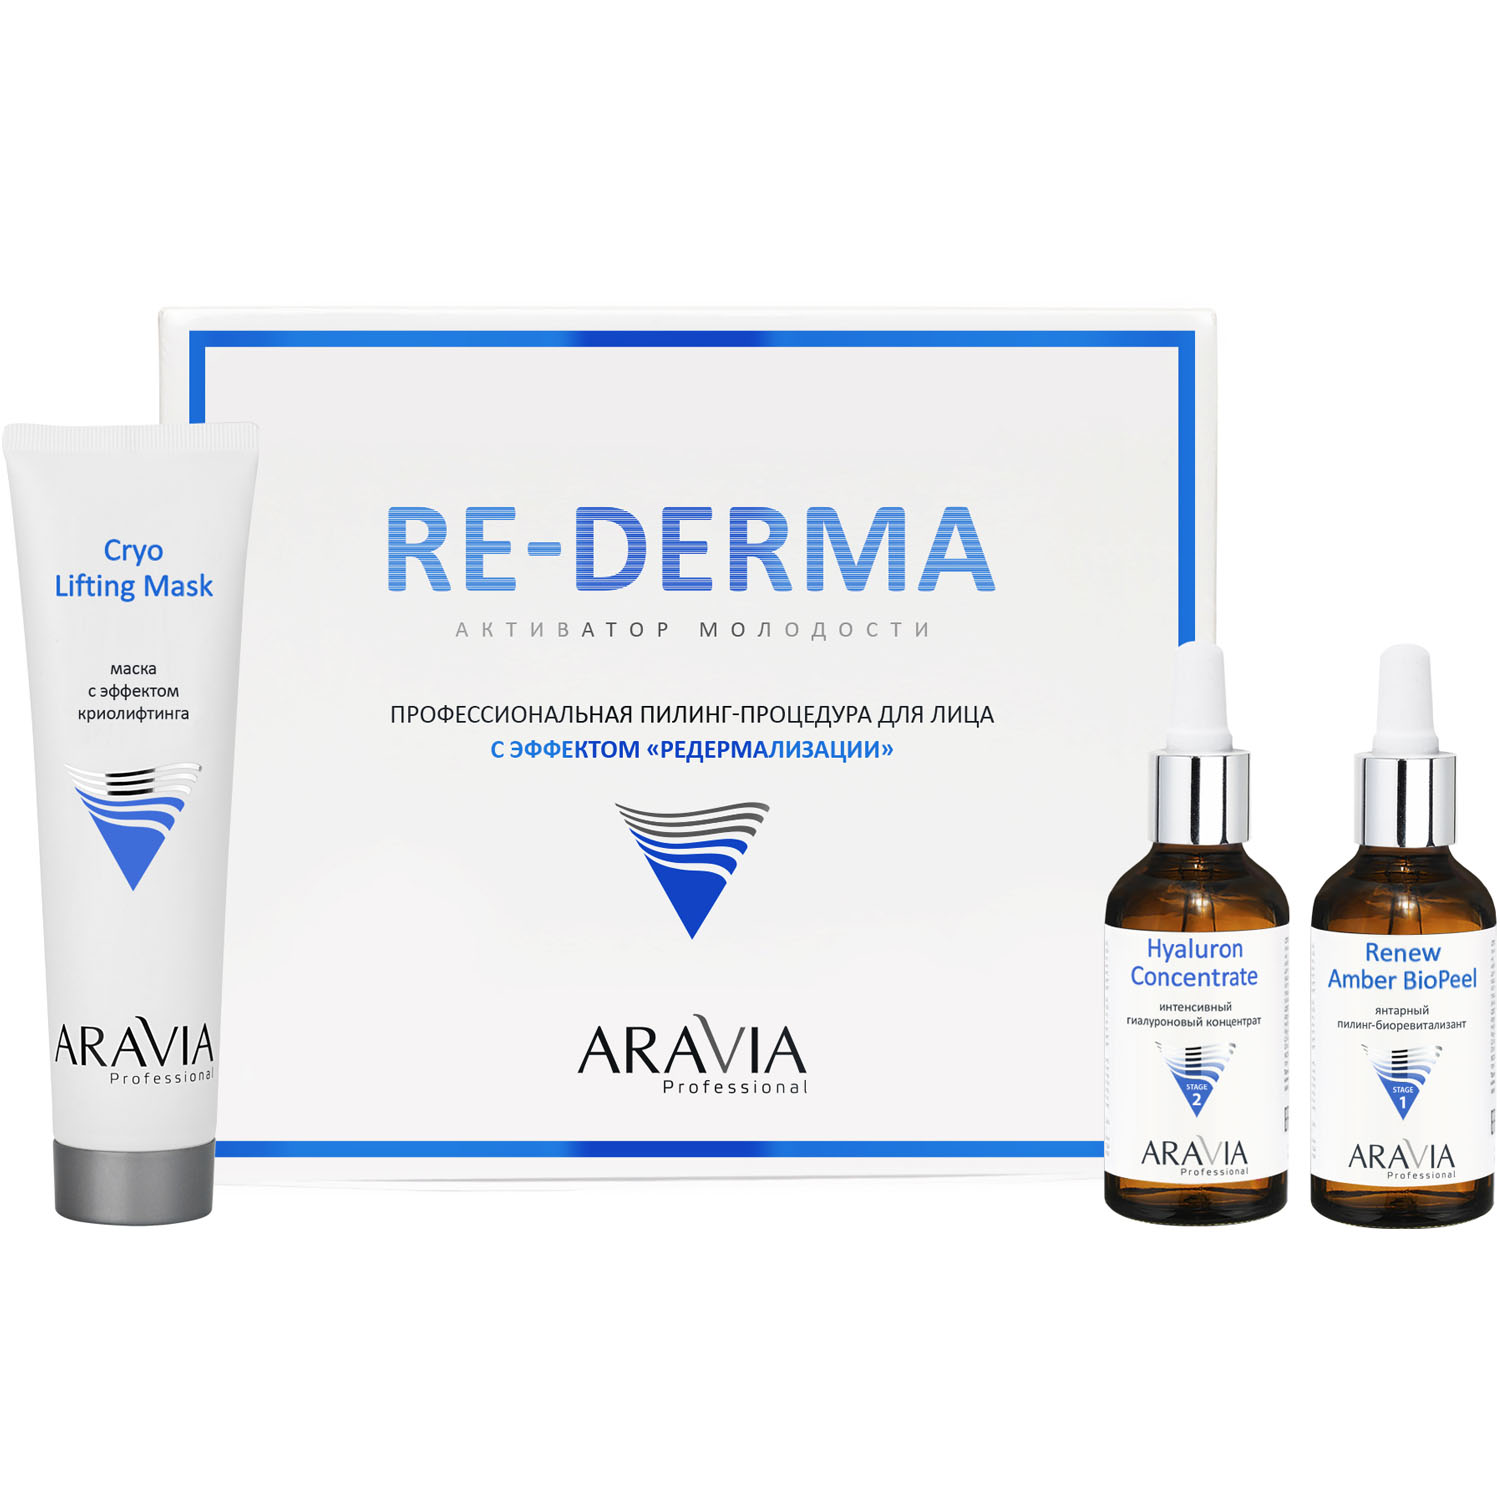 Aravia Professional Профессиональная пилинг-процедура для лица с эффектом «Редермализации» Re-Derma (Aravia Professional, Уход за лицом) цена и фото